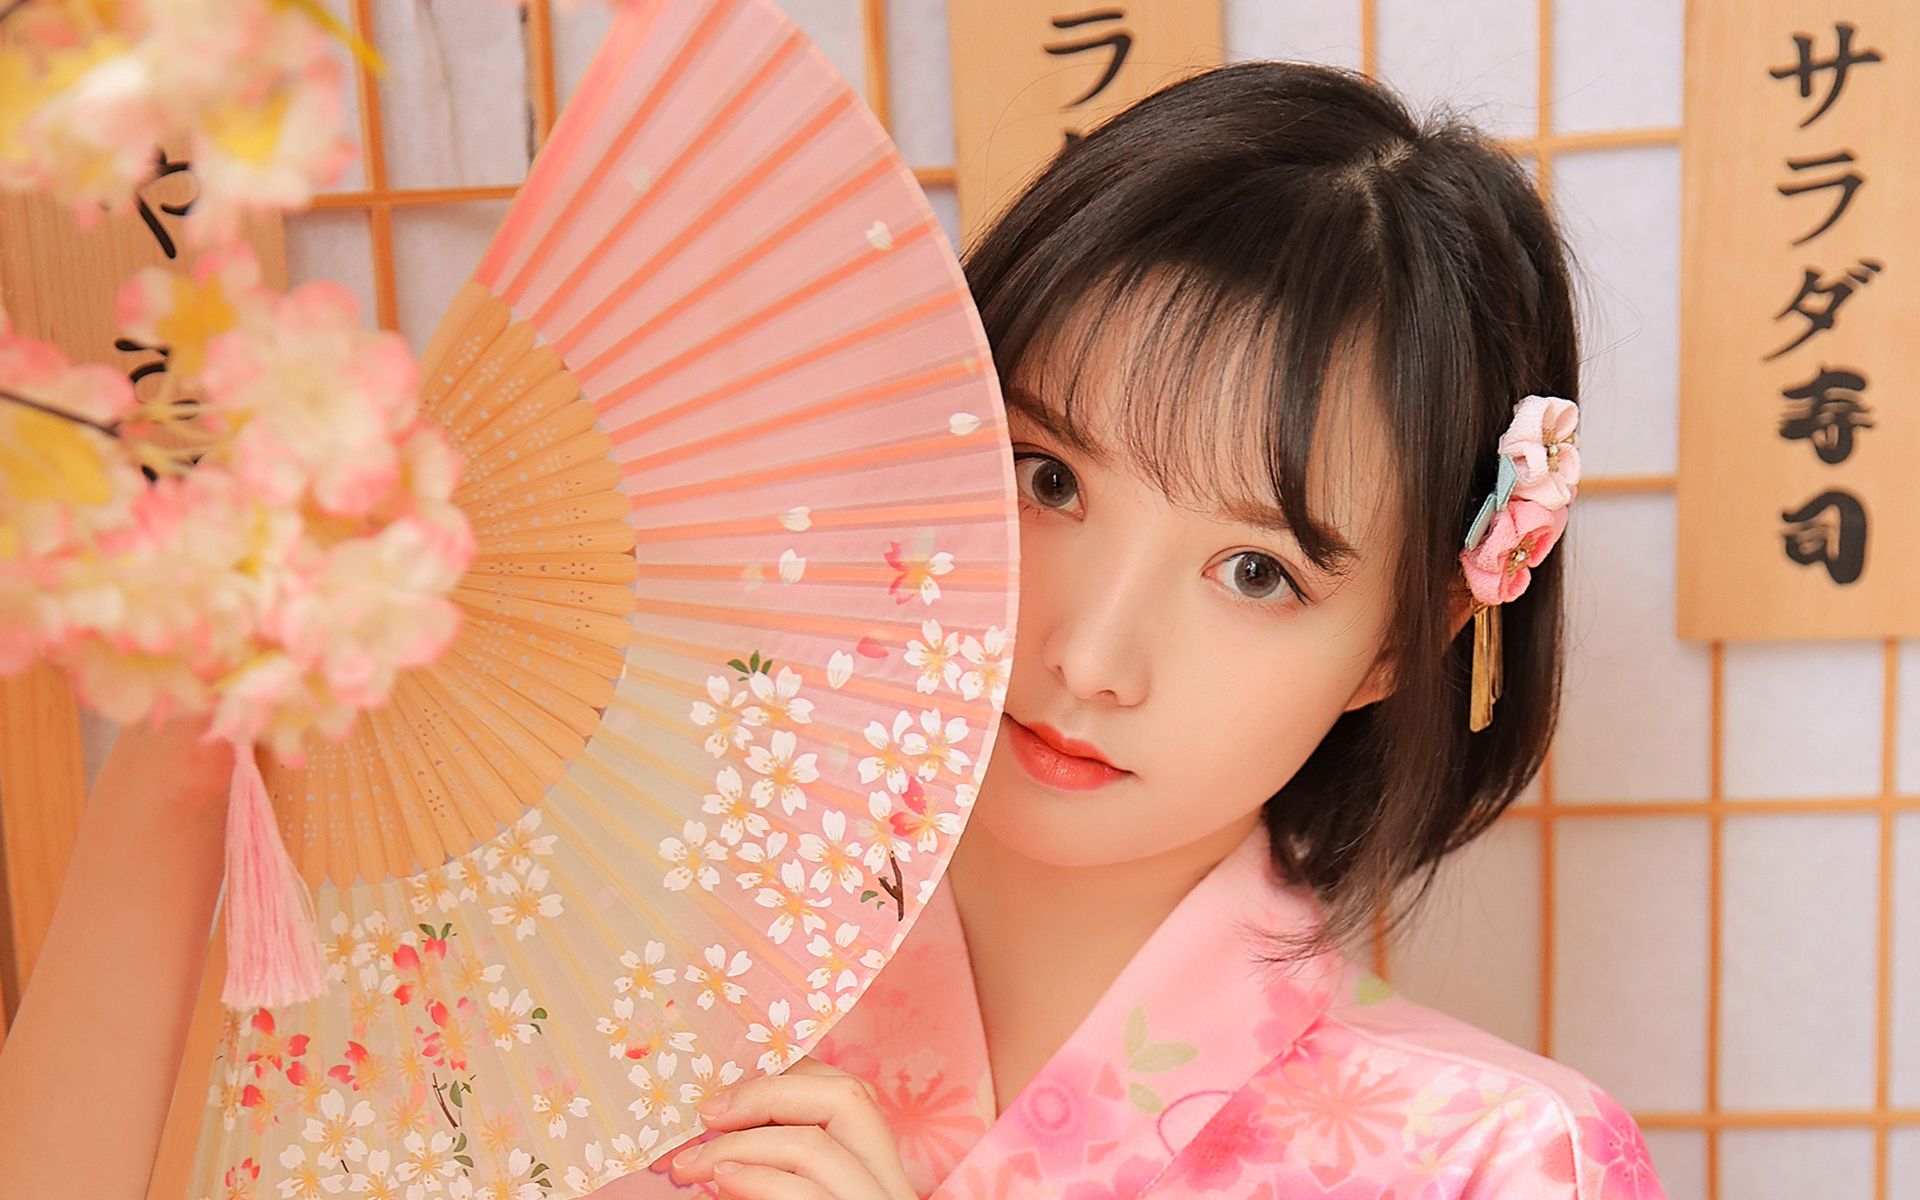 短发美女身着粉色樱花和服日系风格系列高清壁纸